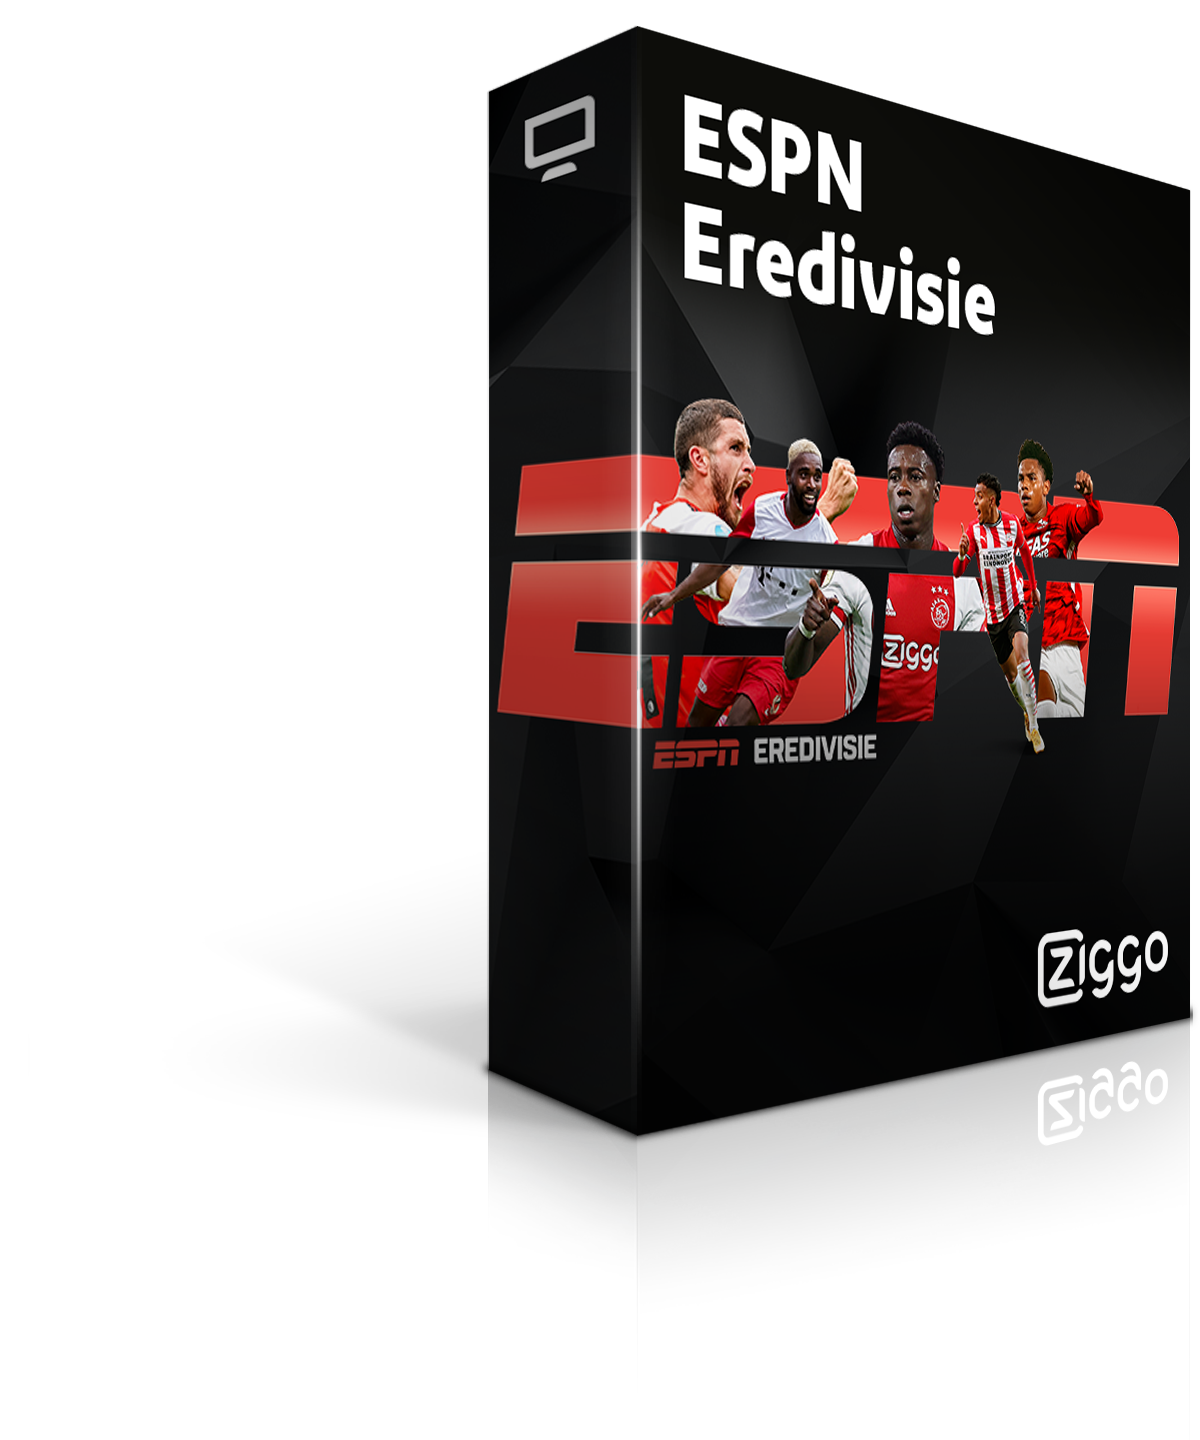 Beleef Eredivisie live met ESPN | Ziggo Entertainment